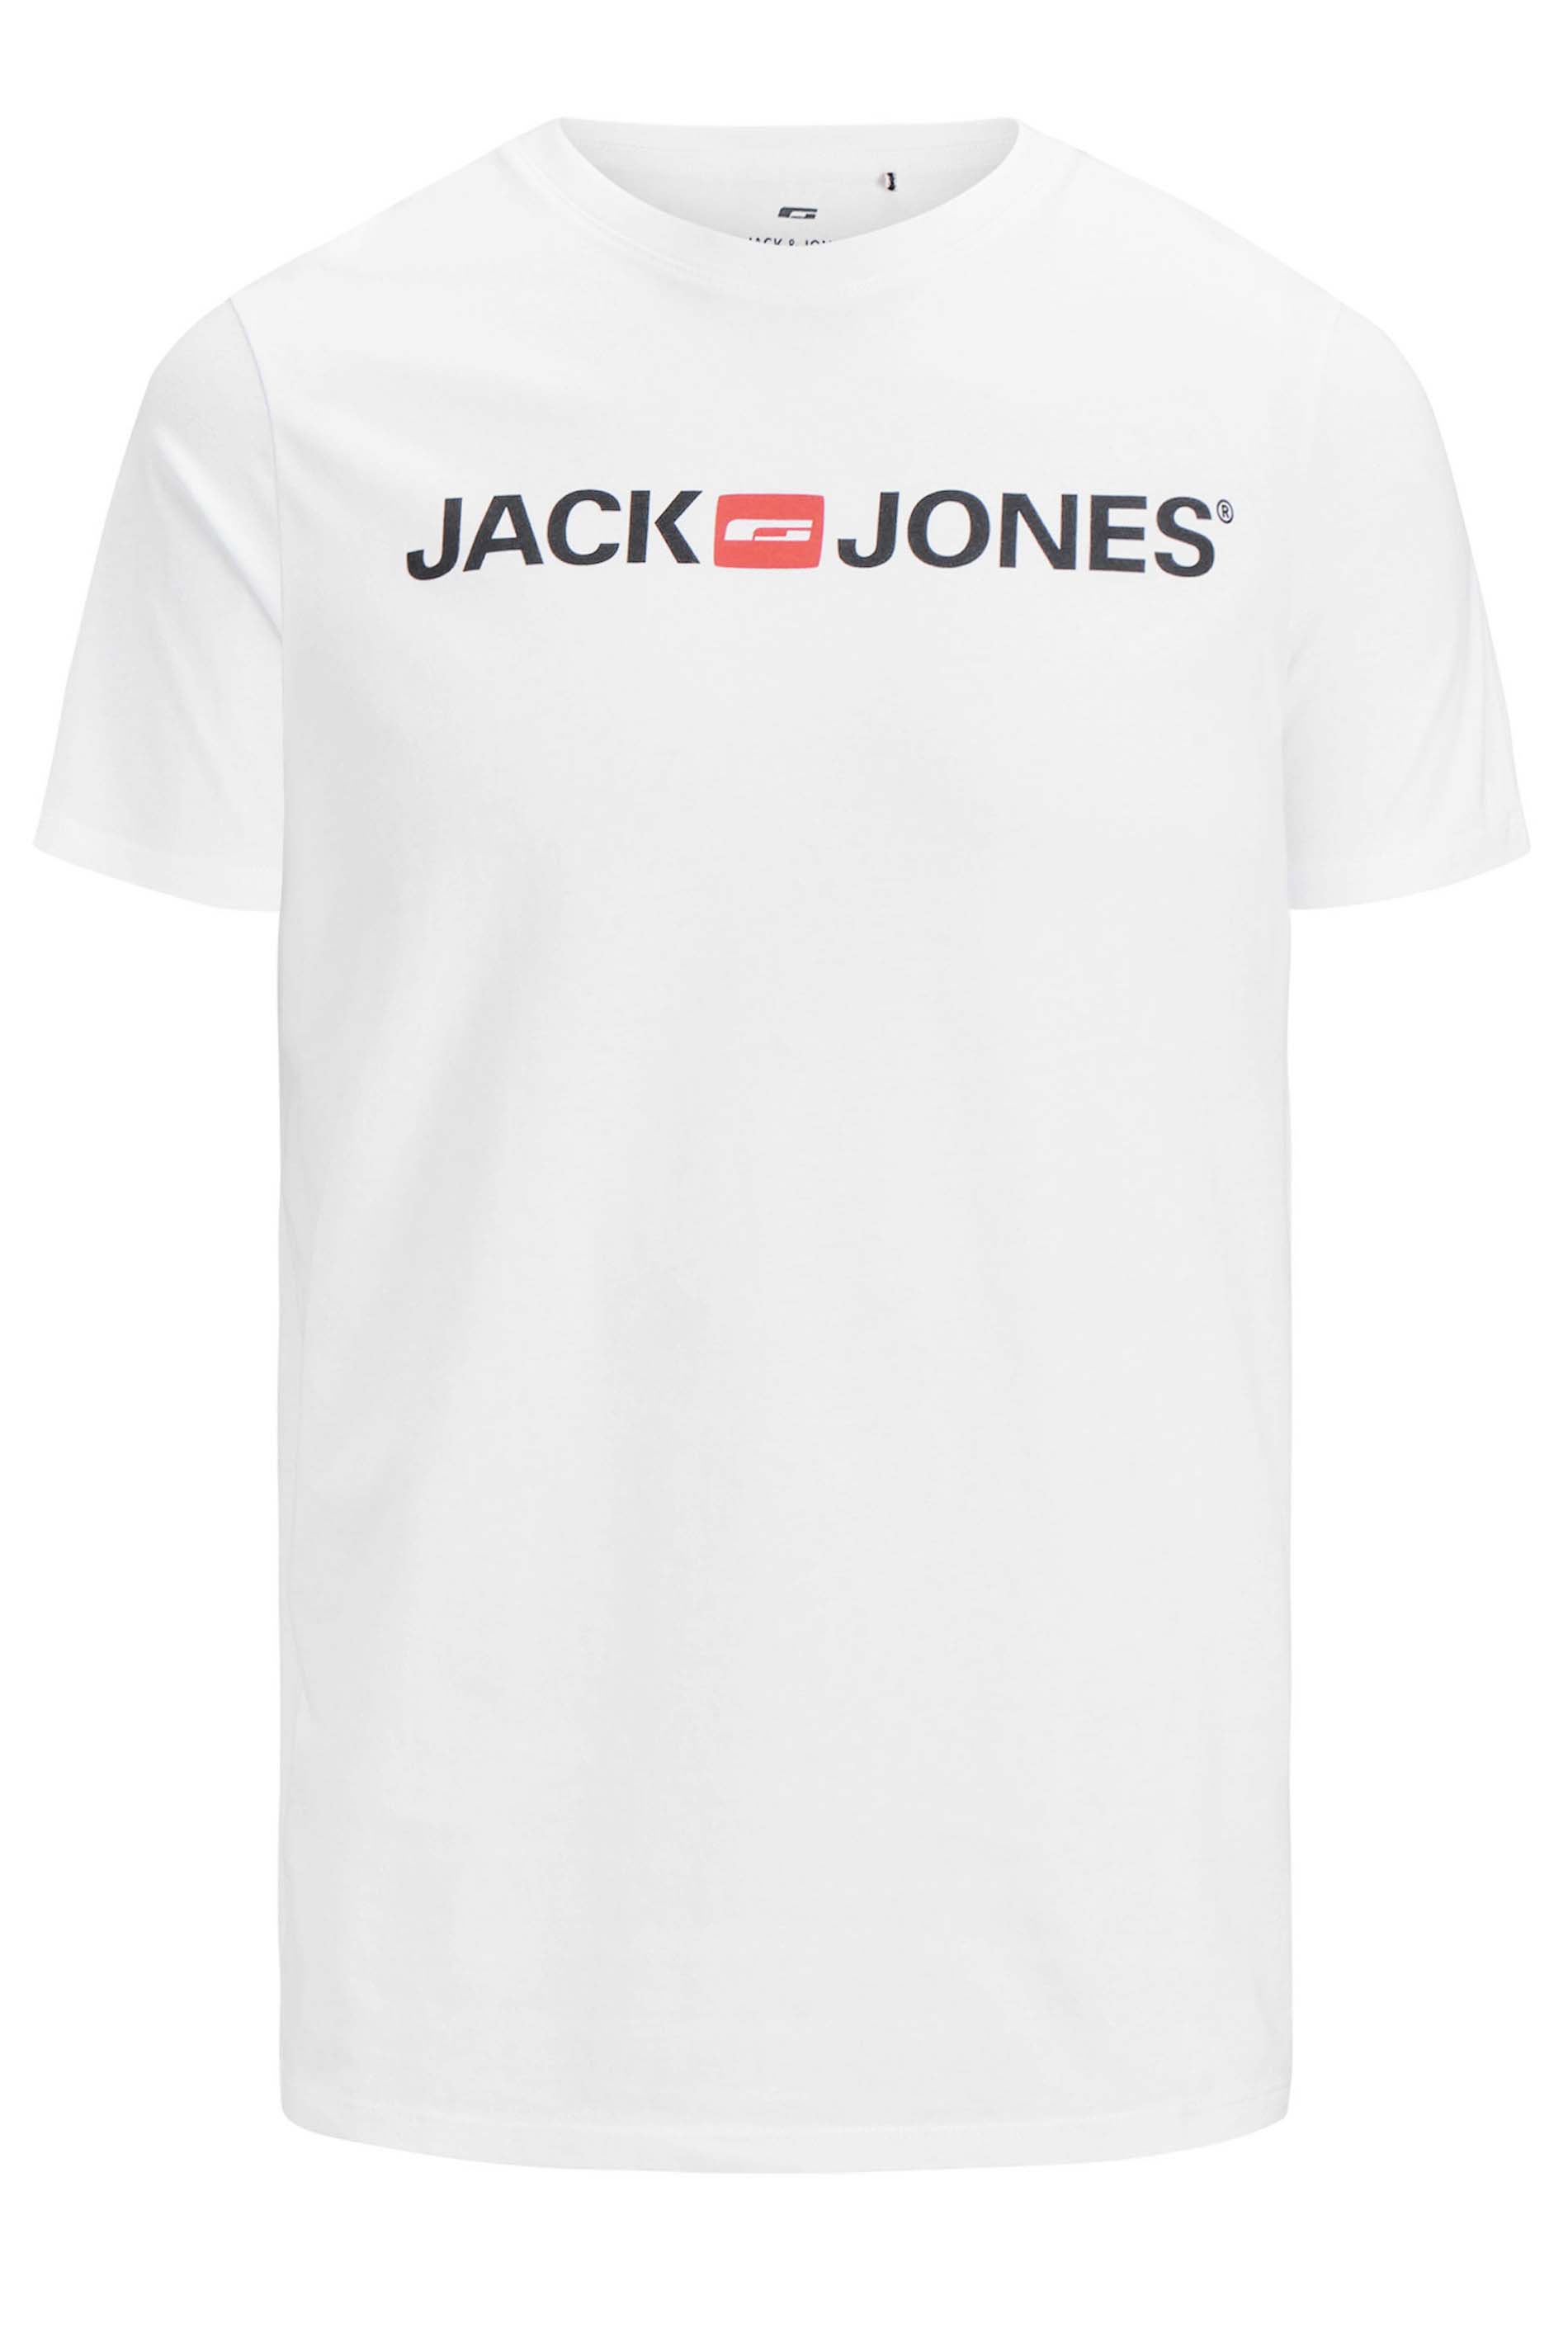 JACK & JONES White Logo T-Shirt | Bad Rhino 2